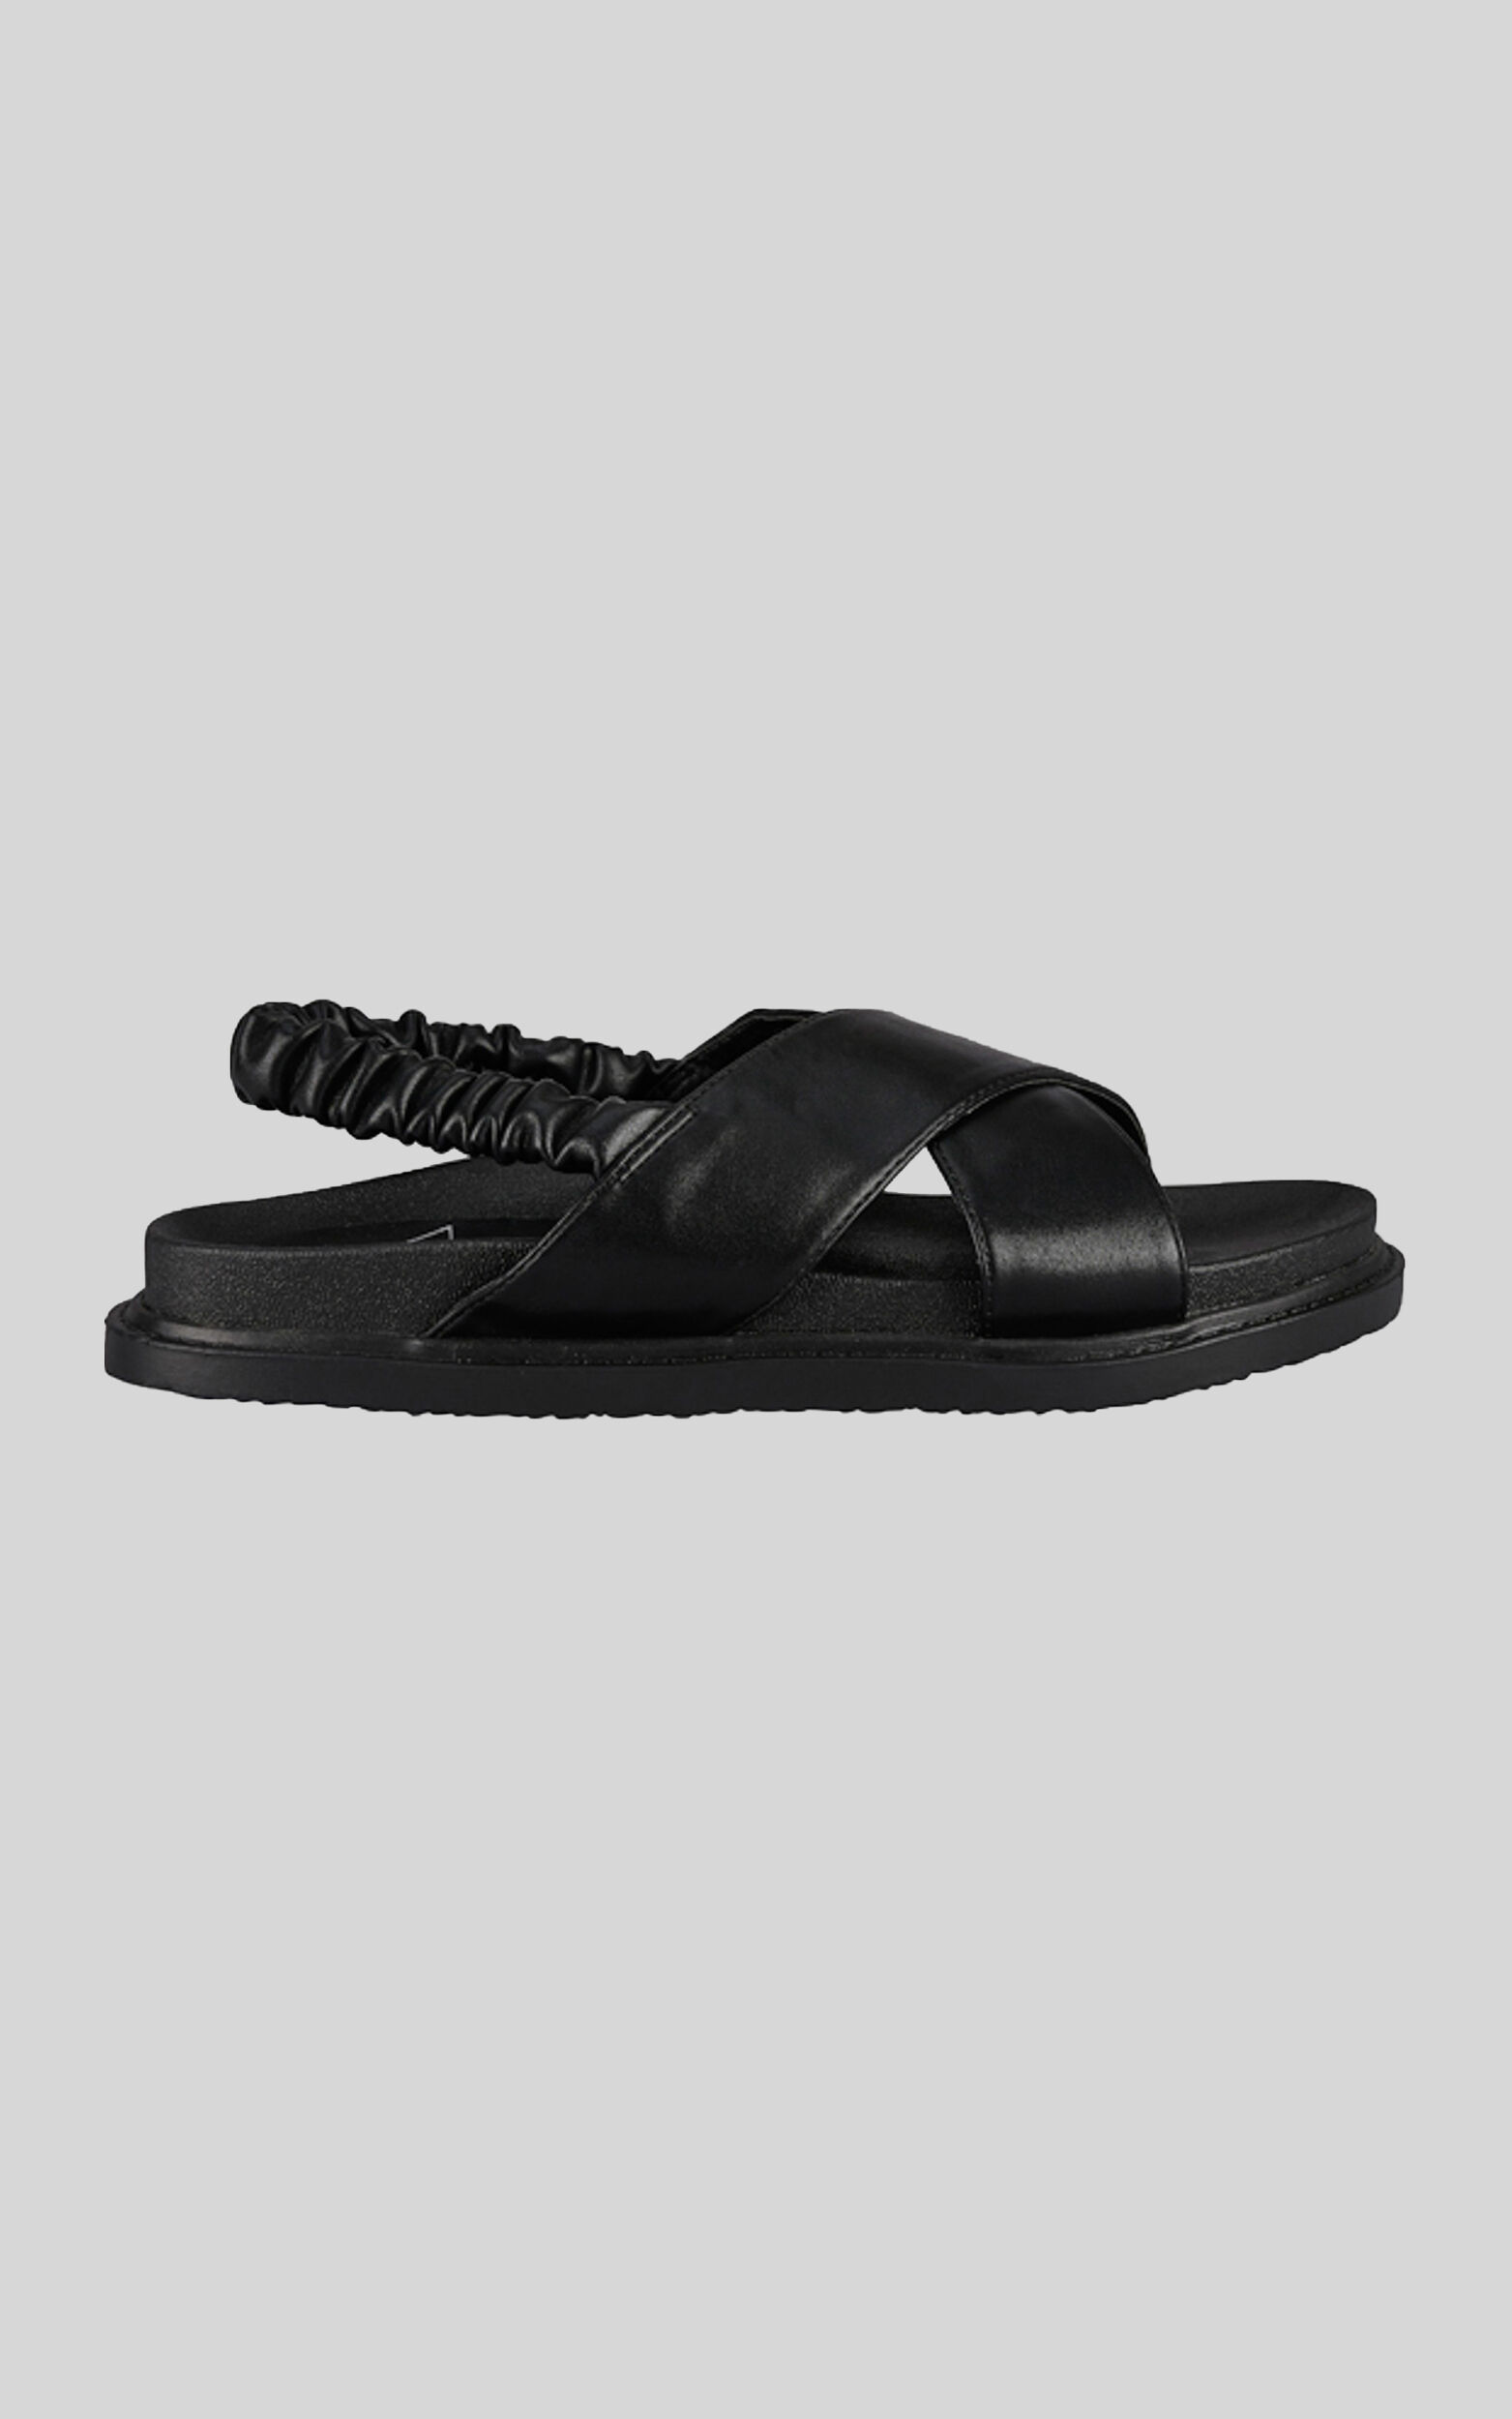 St Sana - Tatum Sandals in Black - 06, BLK1